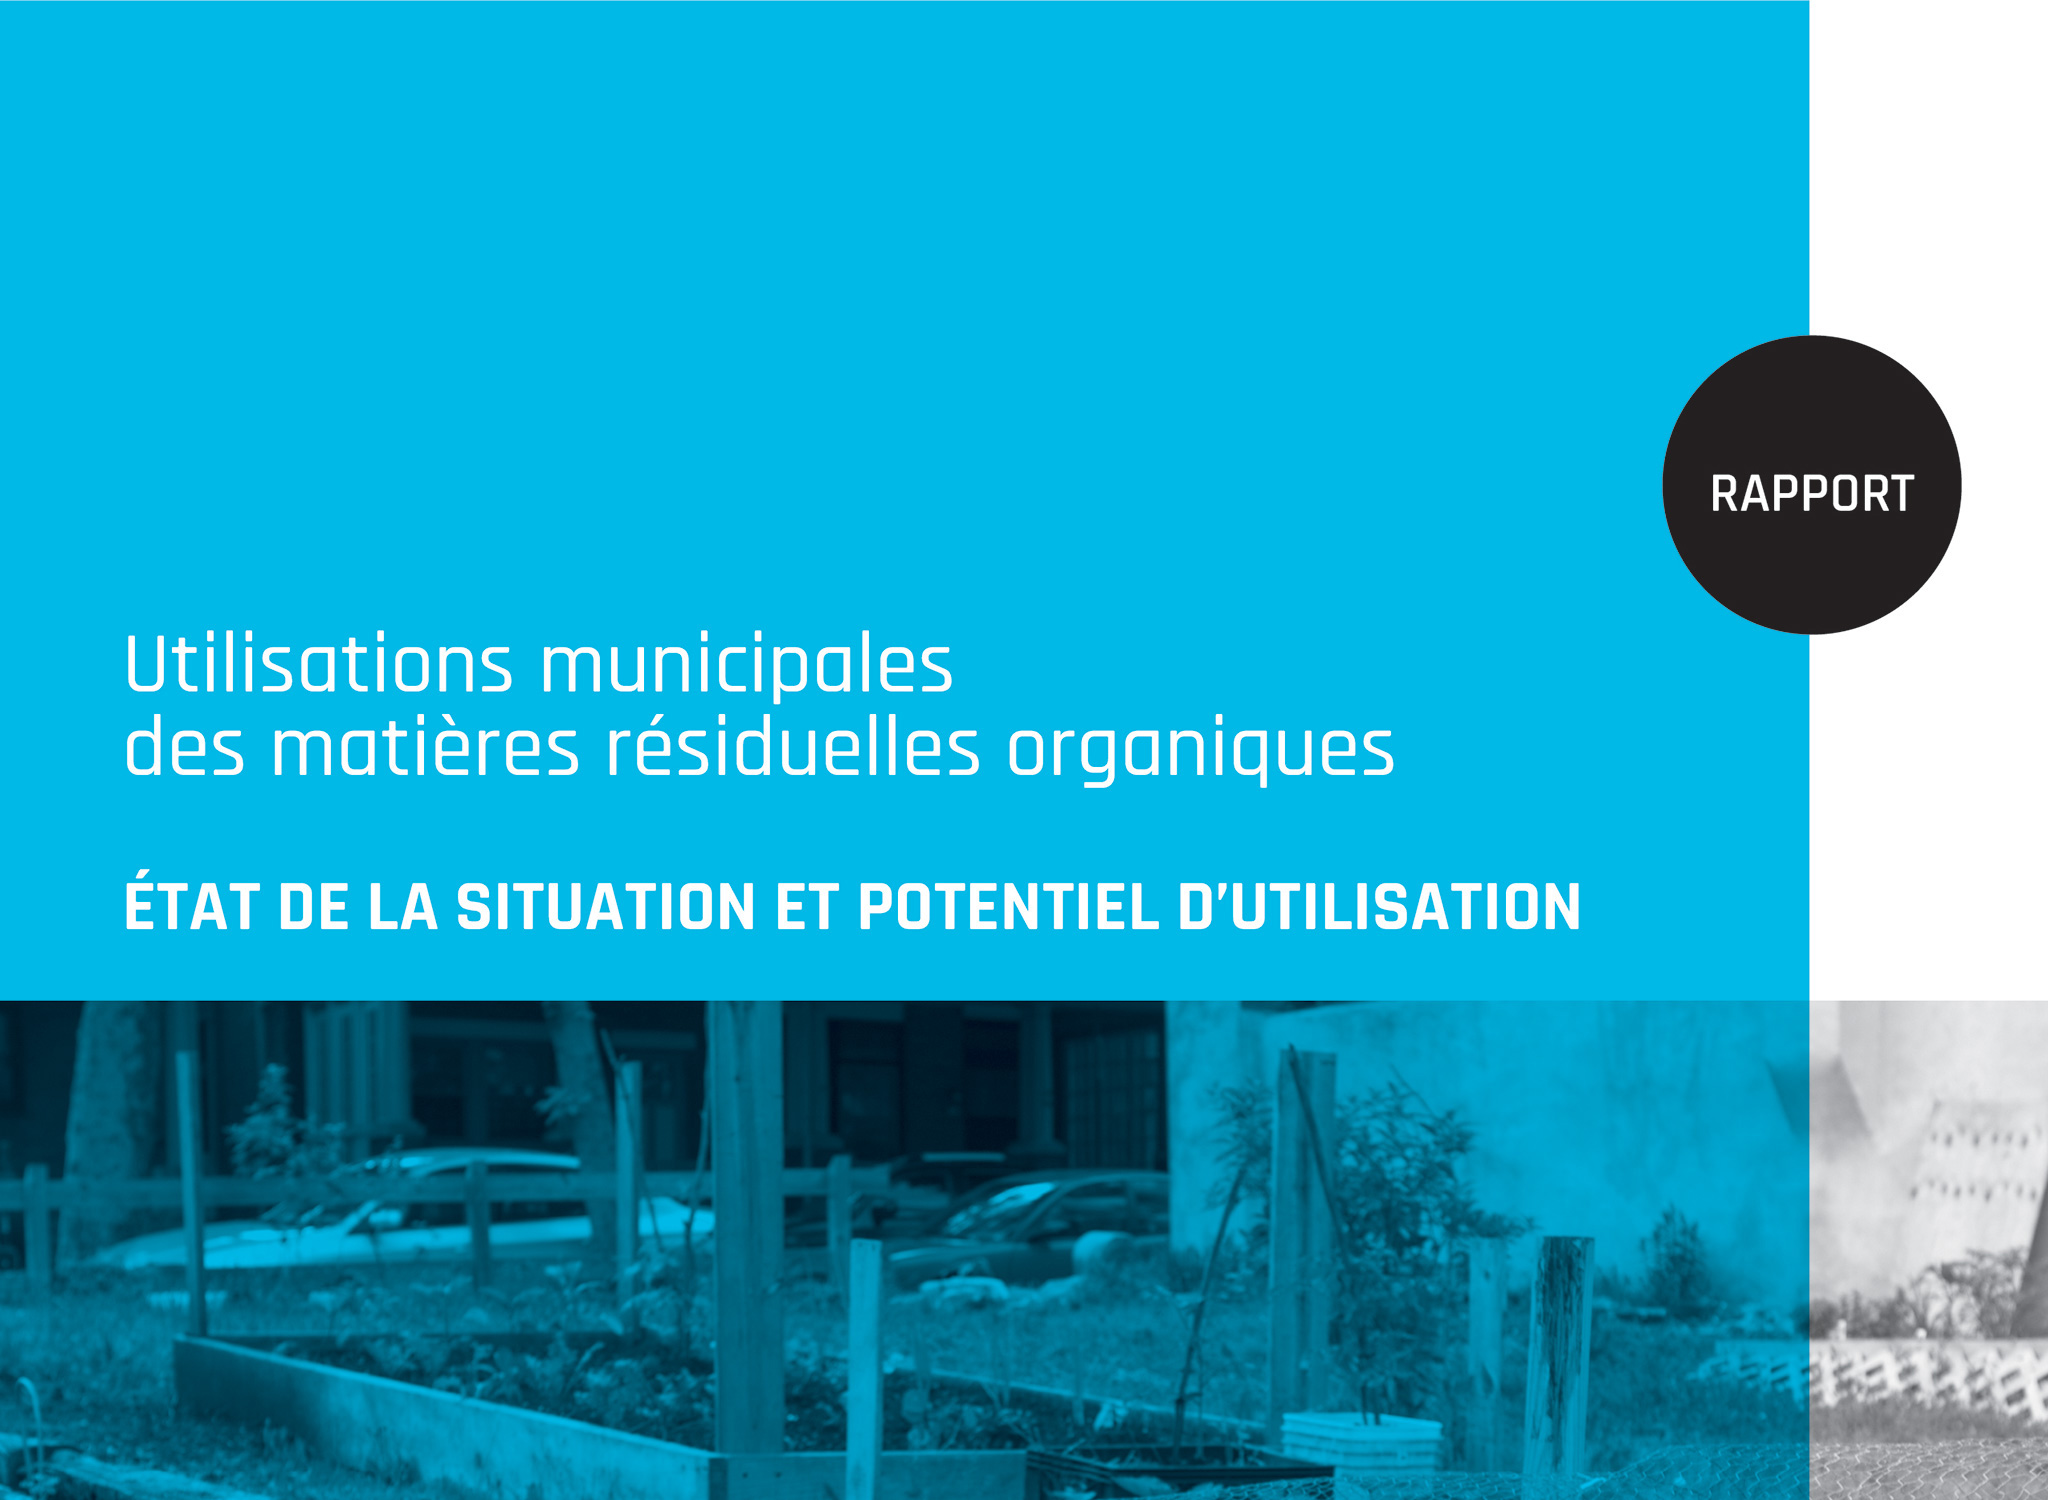 Rapport interactif accessible de Recyc Québec.